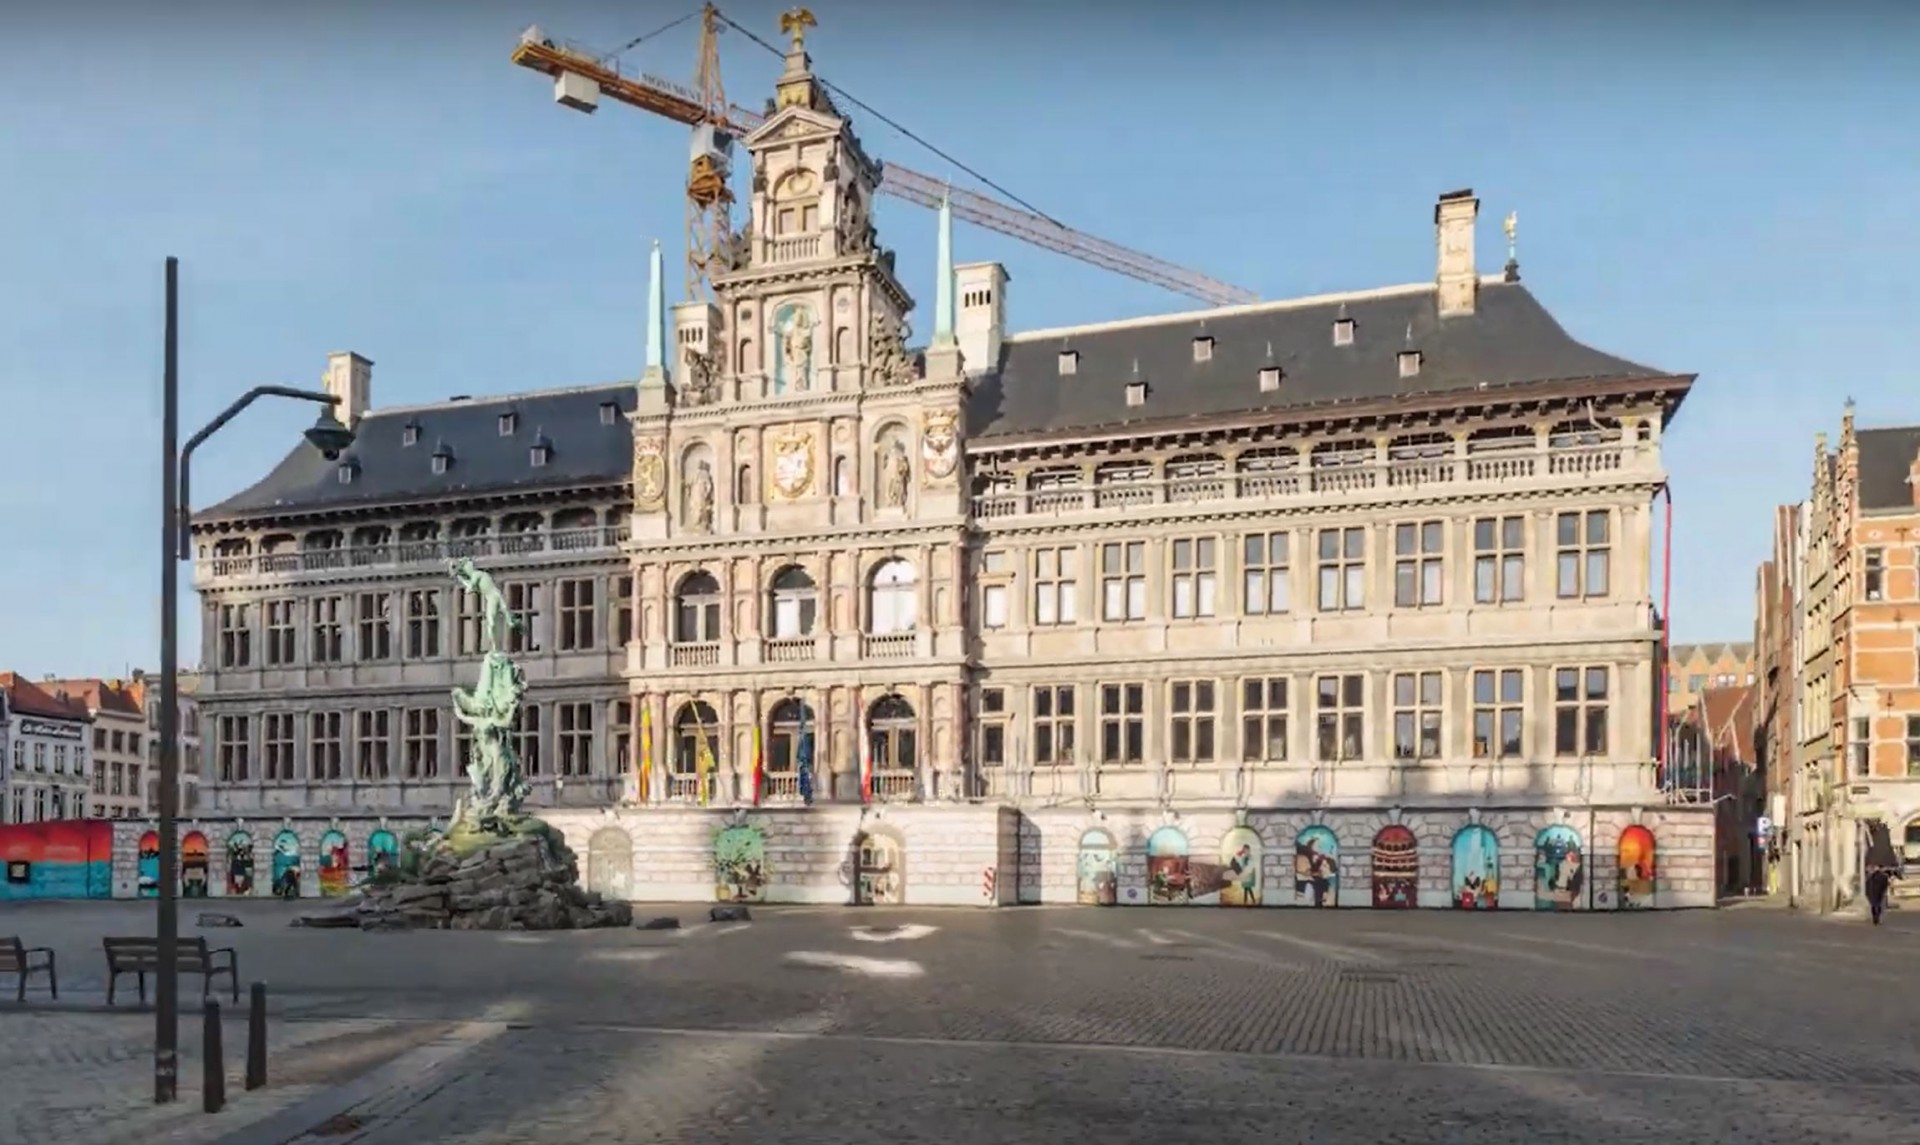 Het 16de-eeuwse stadhuis aan de Grote Markt in Antwerpen.